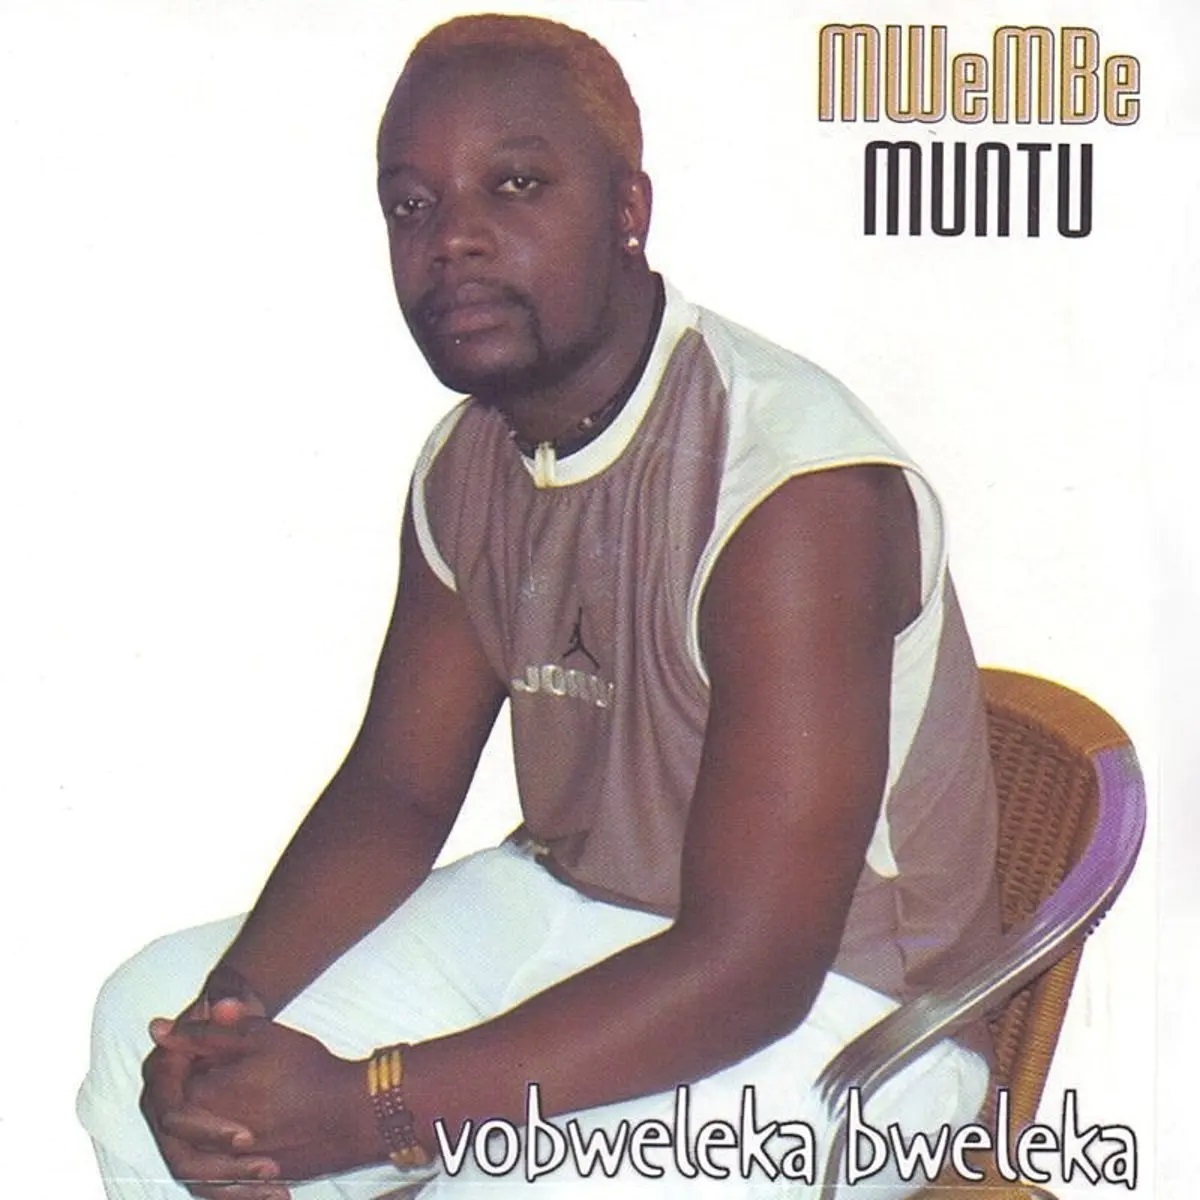 Mweembe Muntu